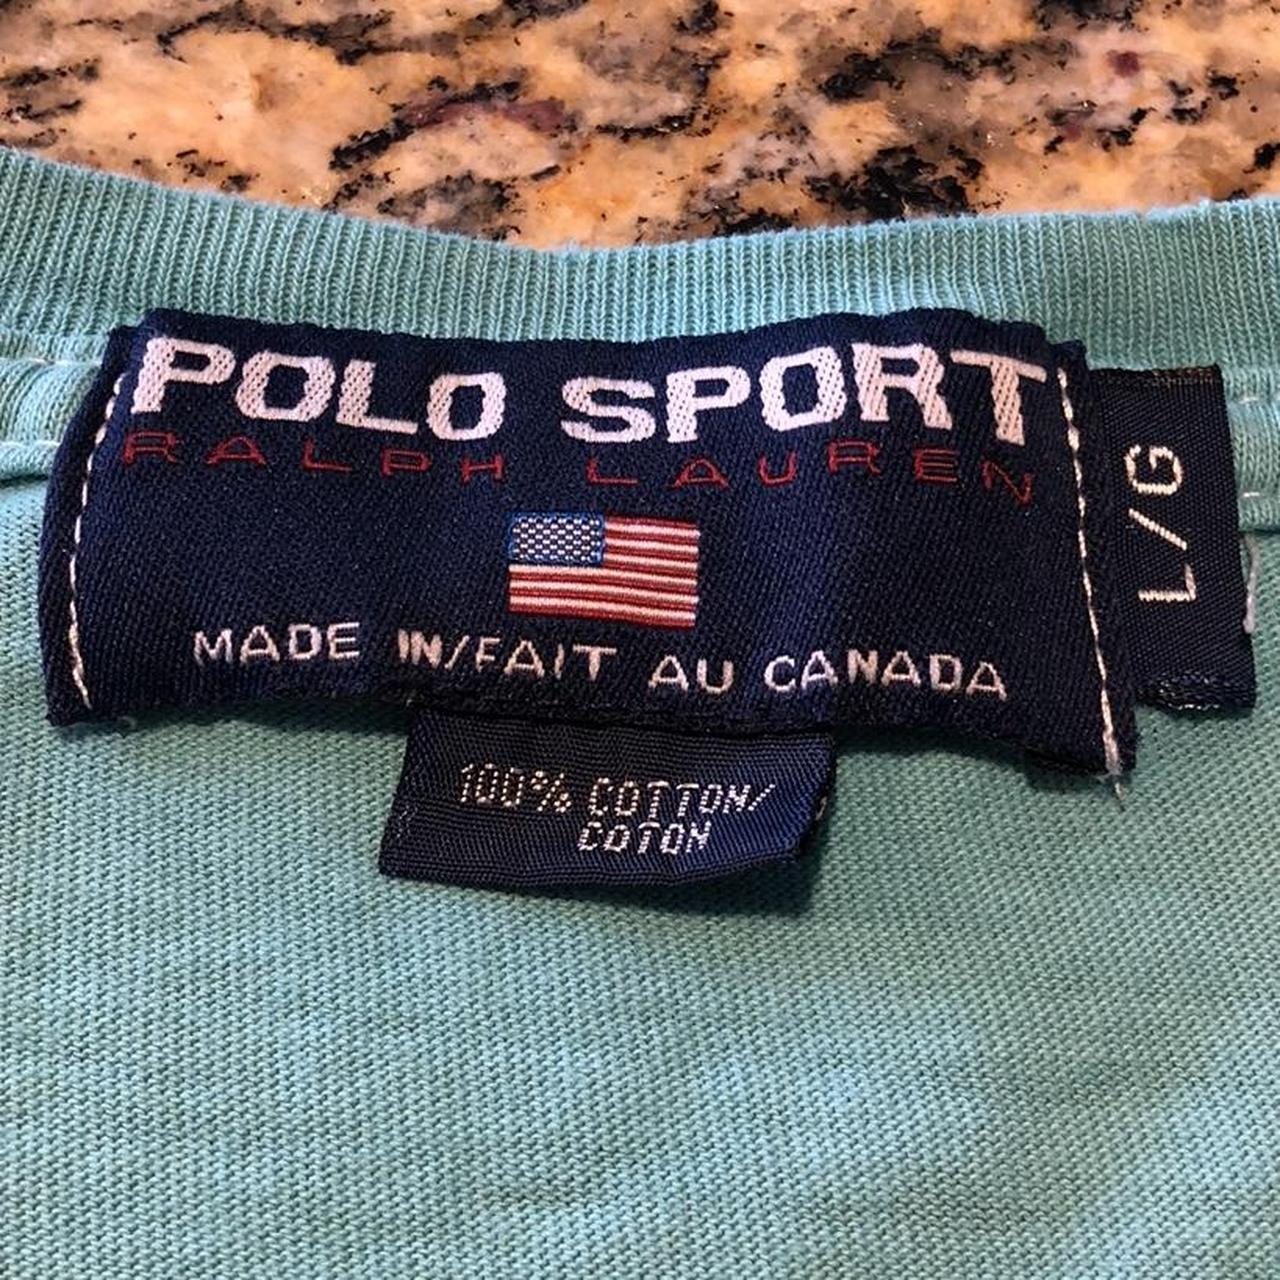 Sportswear Tag -  Canada